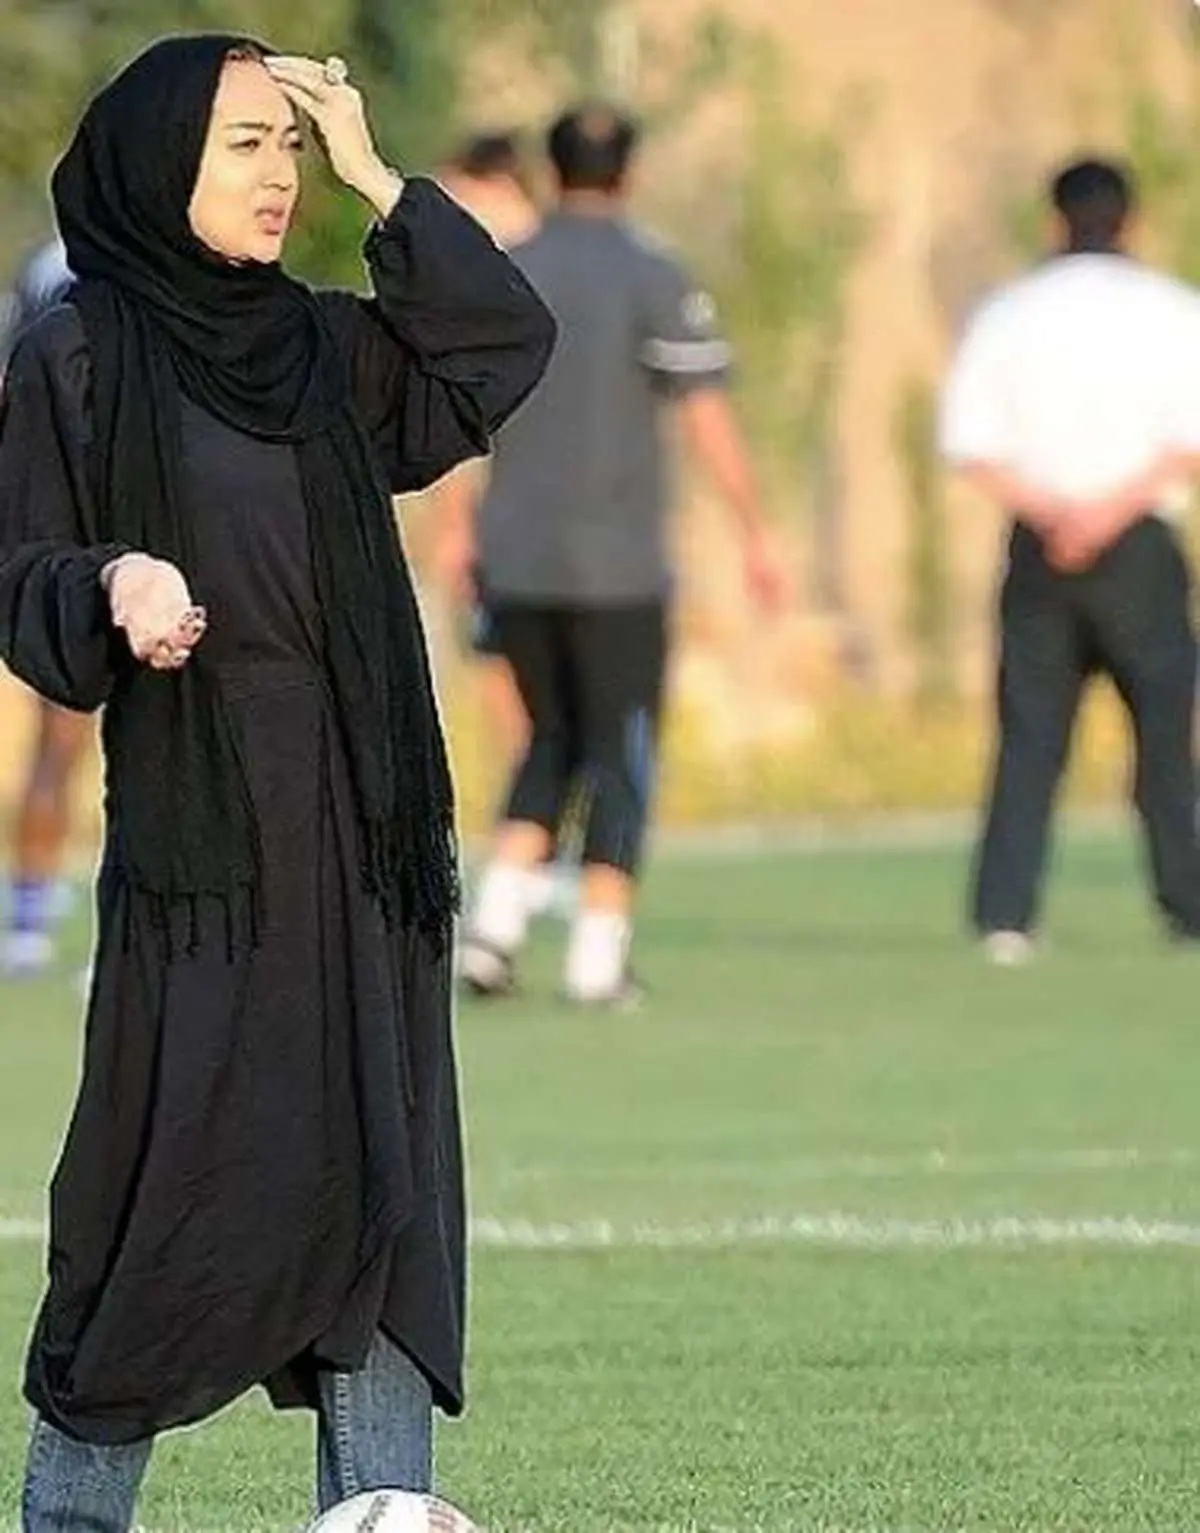 فوتبال بازی کردن نیکی کریمی در تهران/ تصاویر